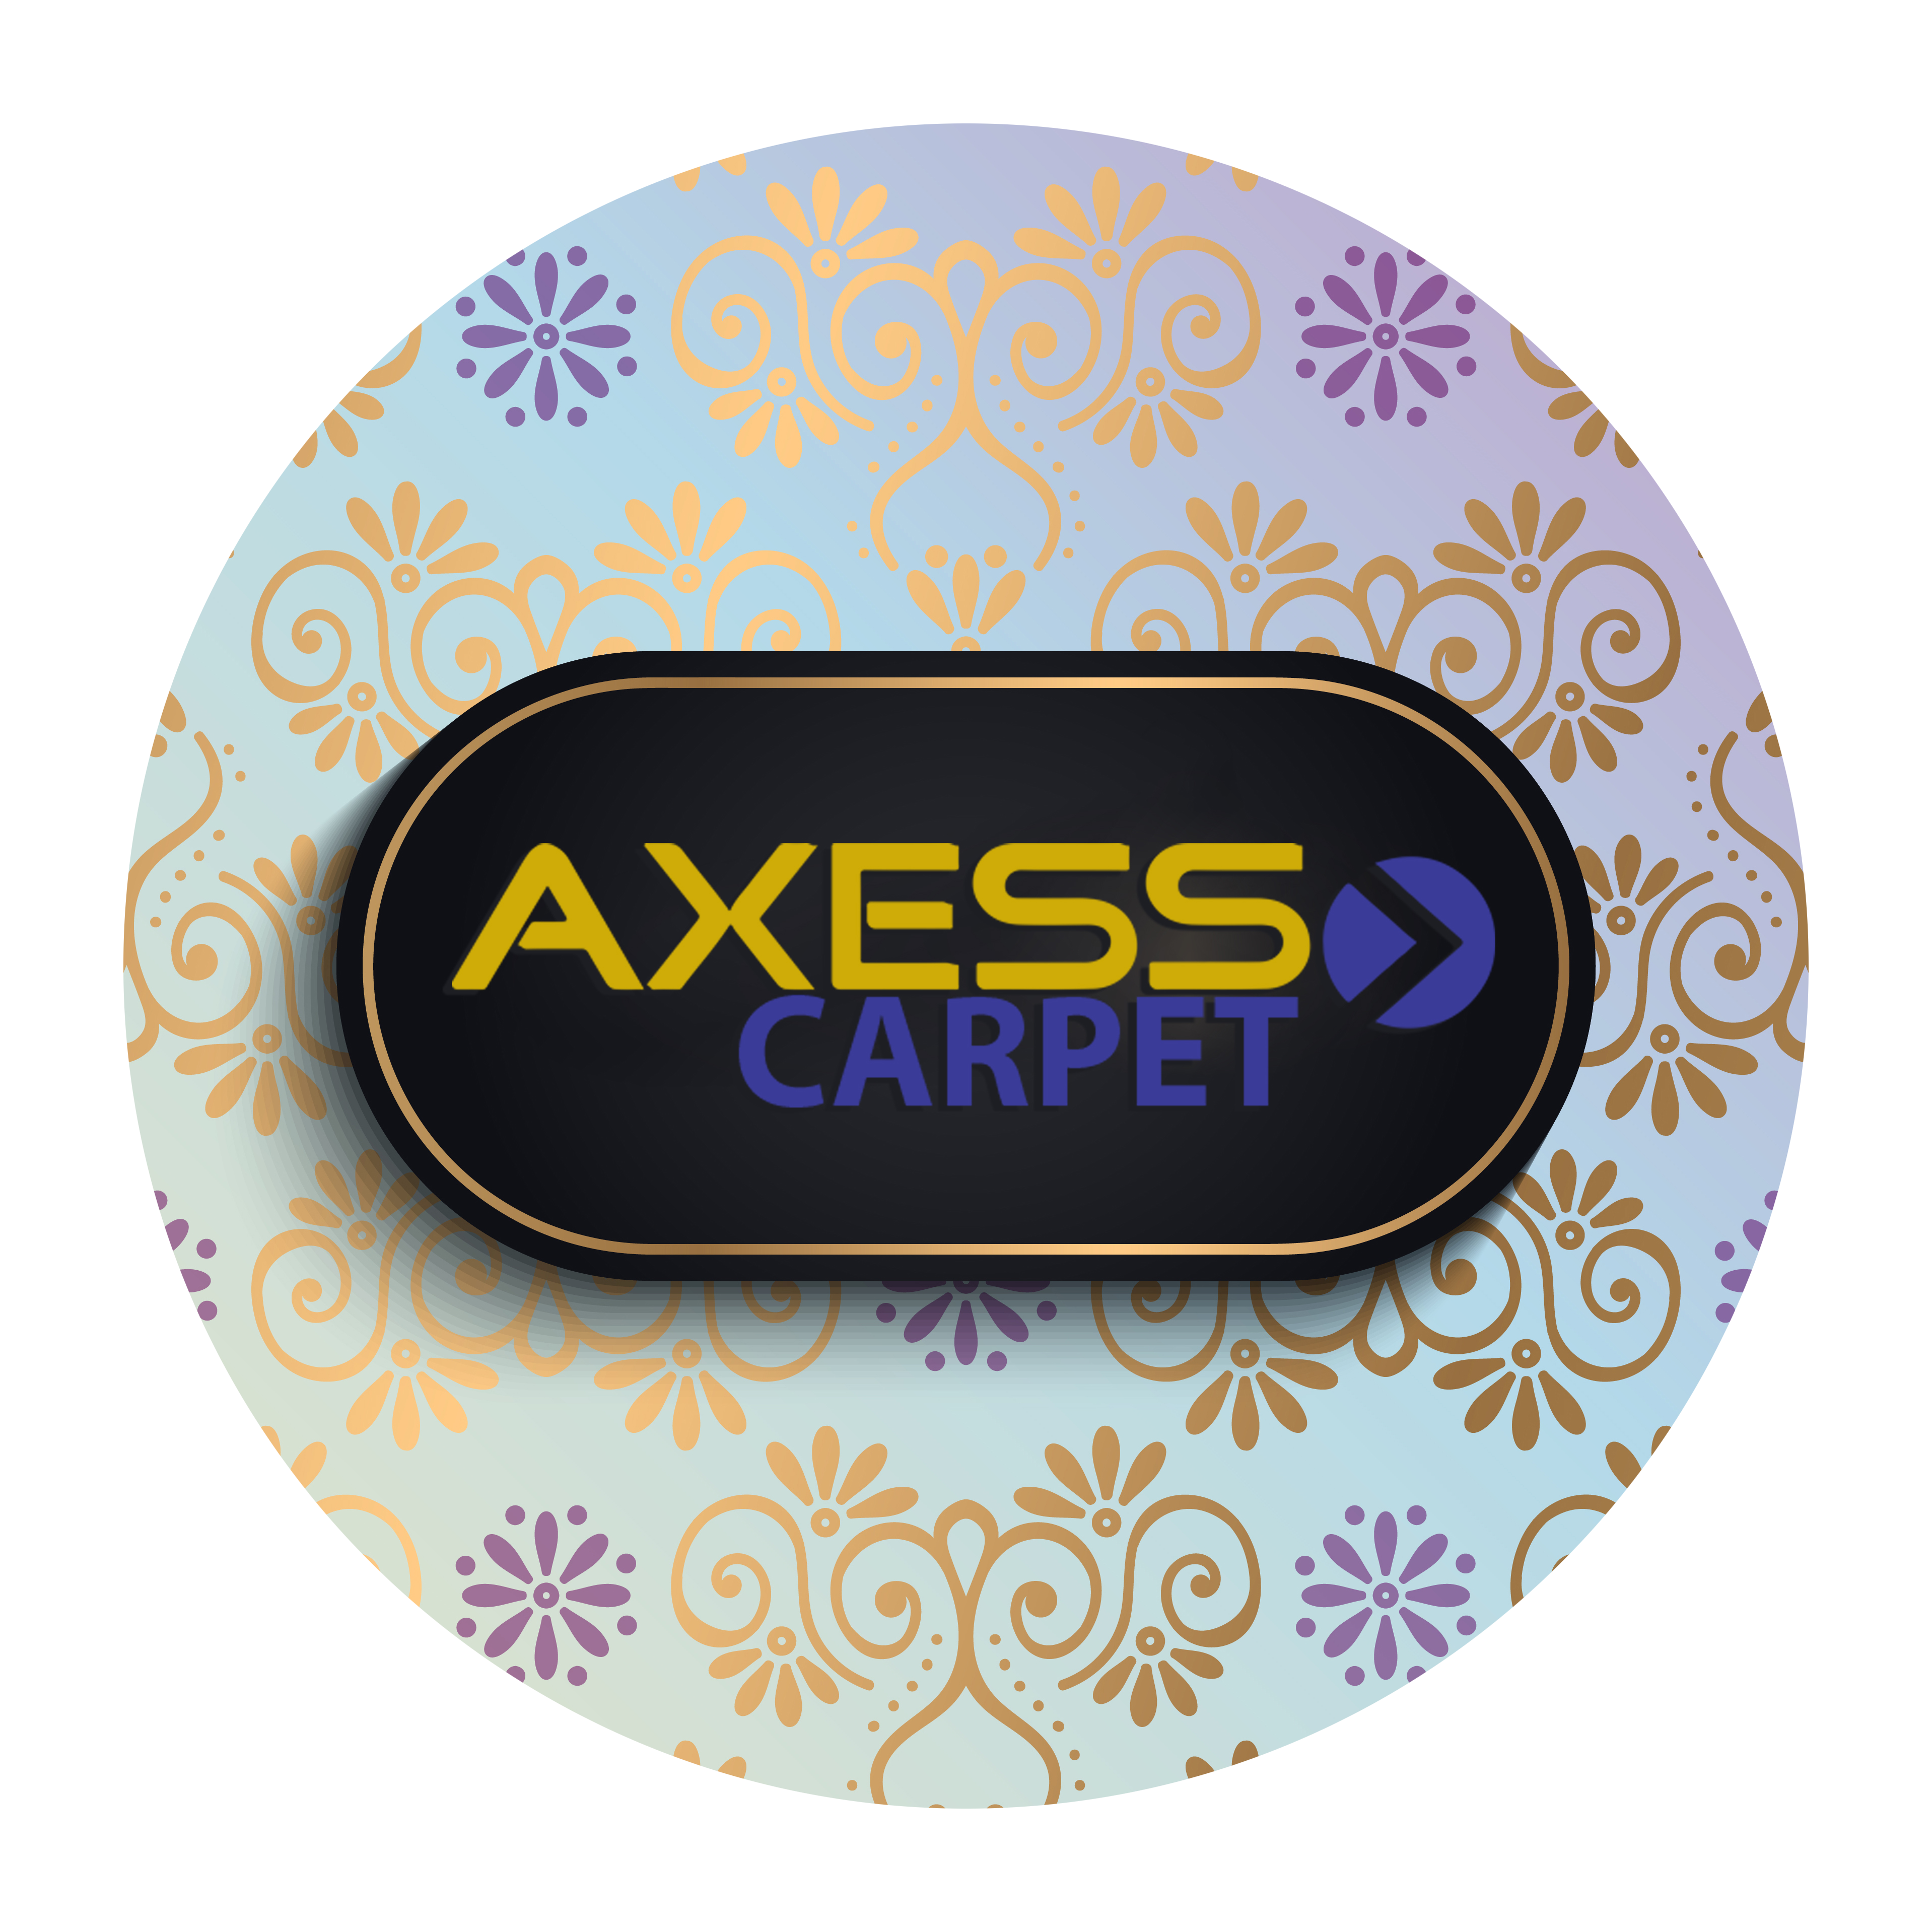 AXESS CARPET